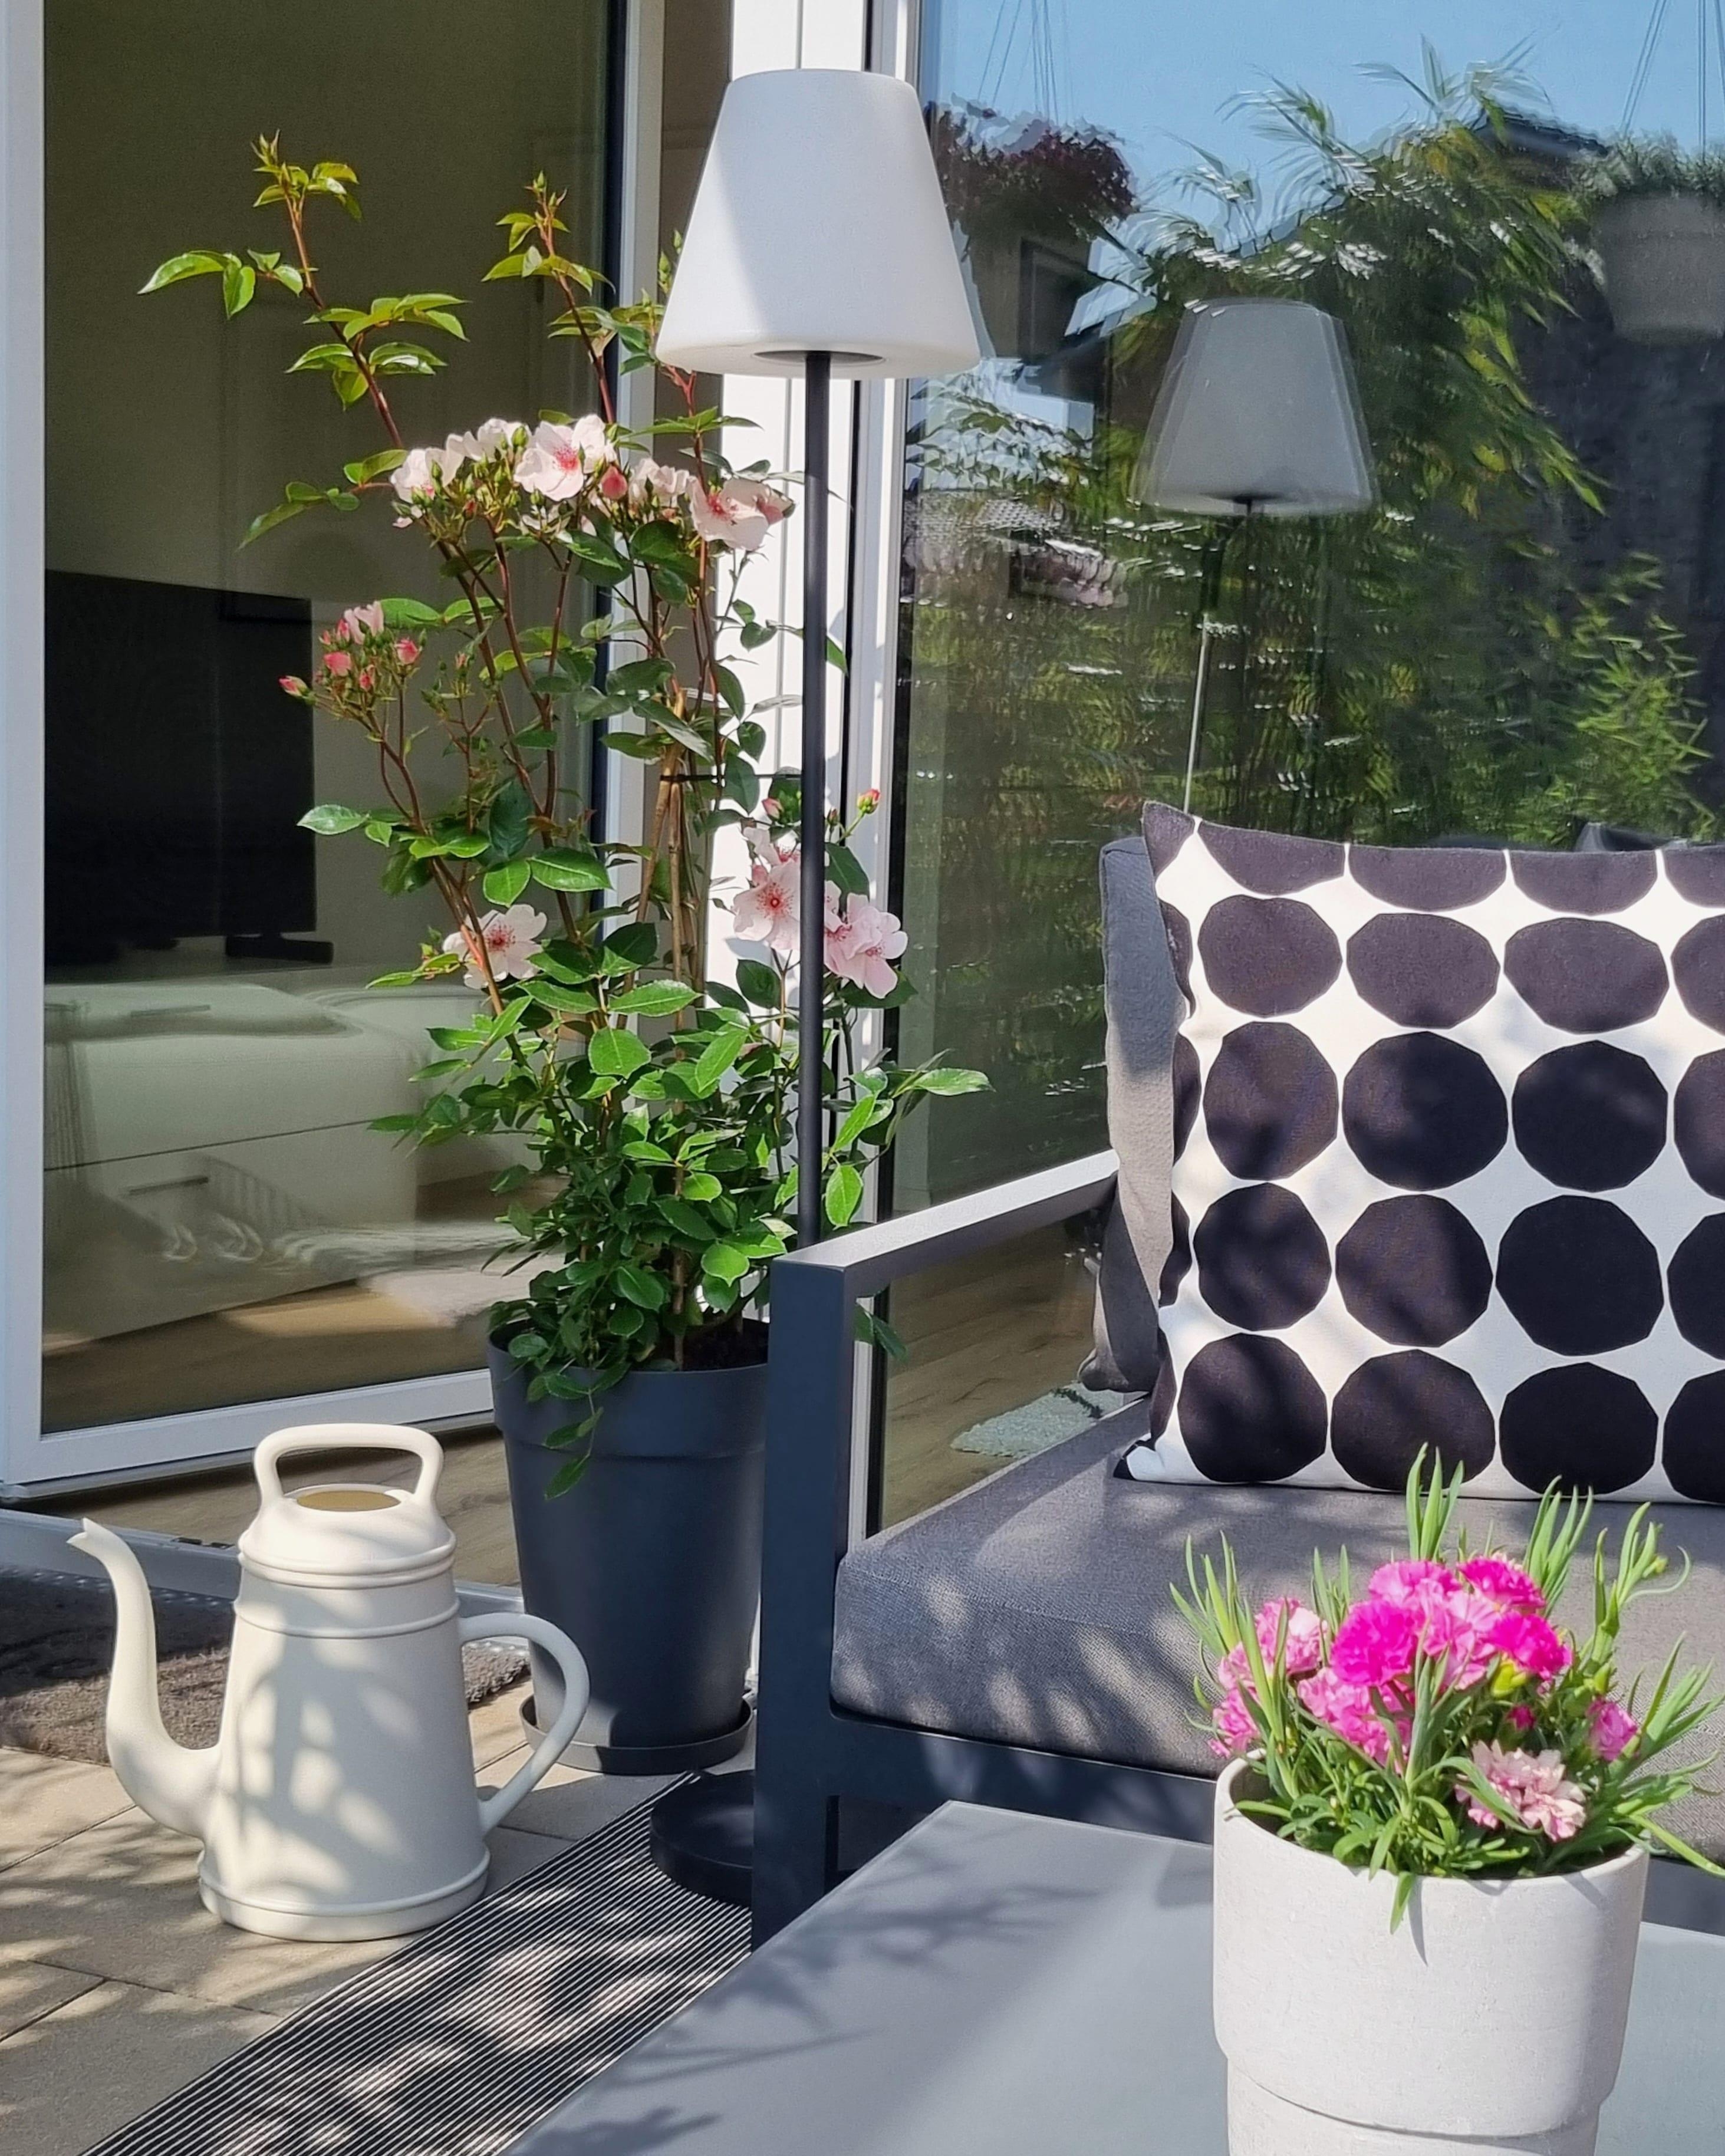 Das schöne Wetter genießen 

#terrasse #outdoor #sonnenschein #blumen #flowers #couchstyle 